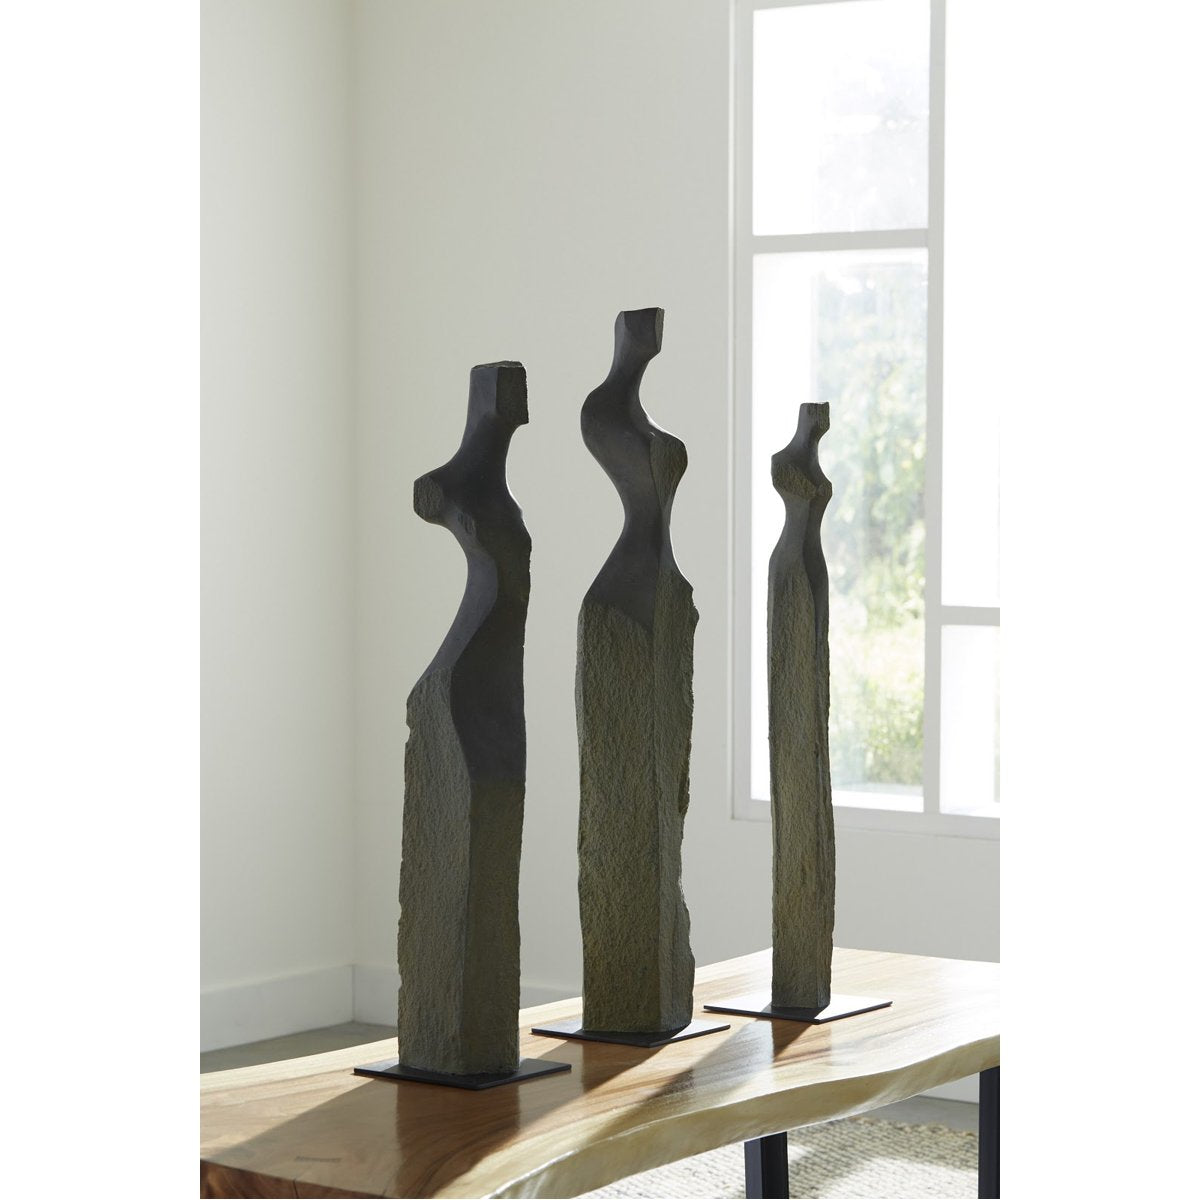 Phillips Collection Cast Women Sculptures, 3-Piece Set